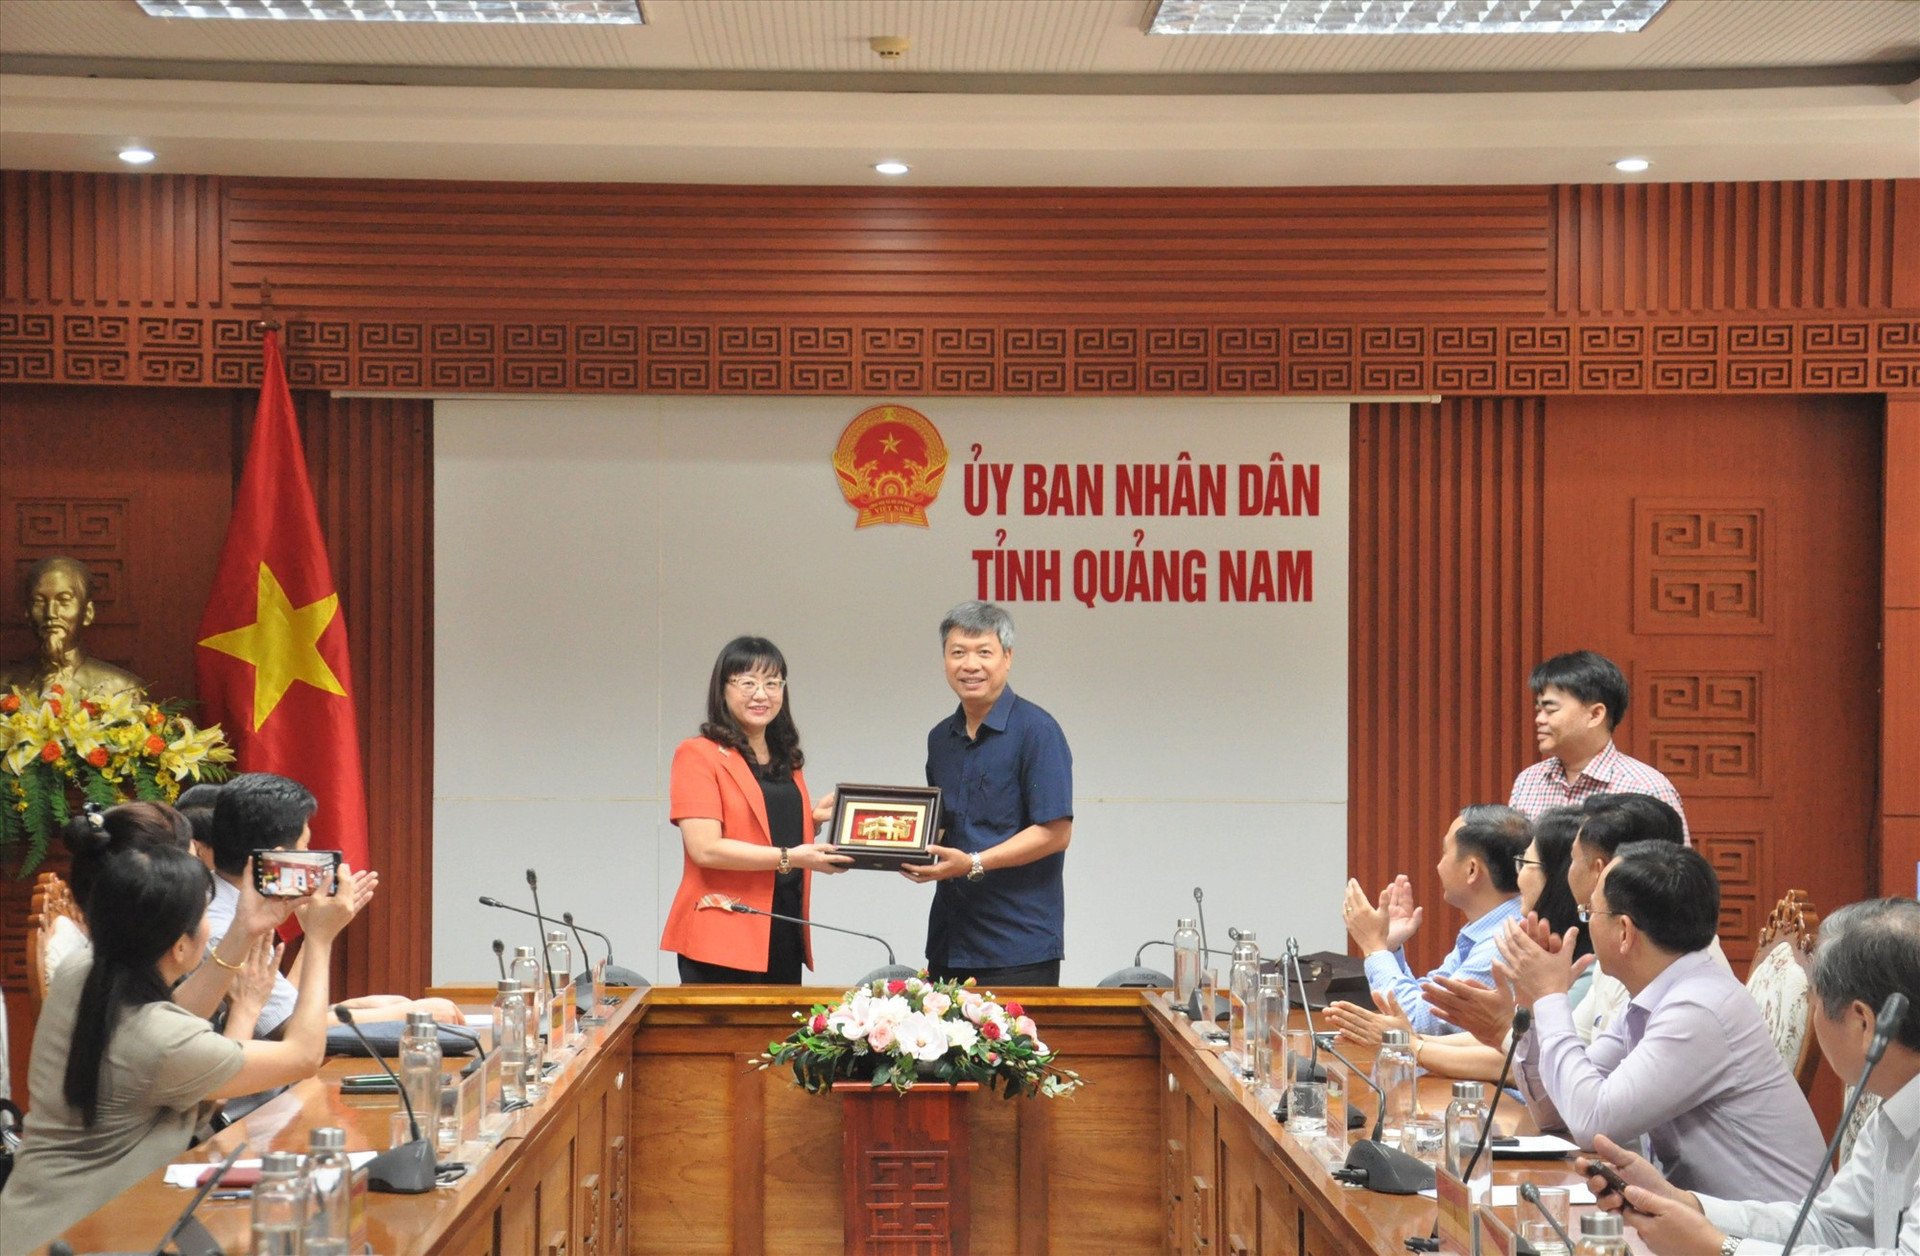 Phó Chủ tịch UBND tỉnh Hồ Quang Bửu tặng quà lưu niệm cho lãnh đạo tỉnh Lào Cai. Ảnh: T.V